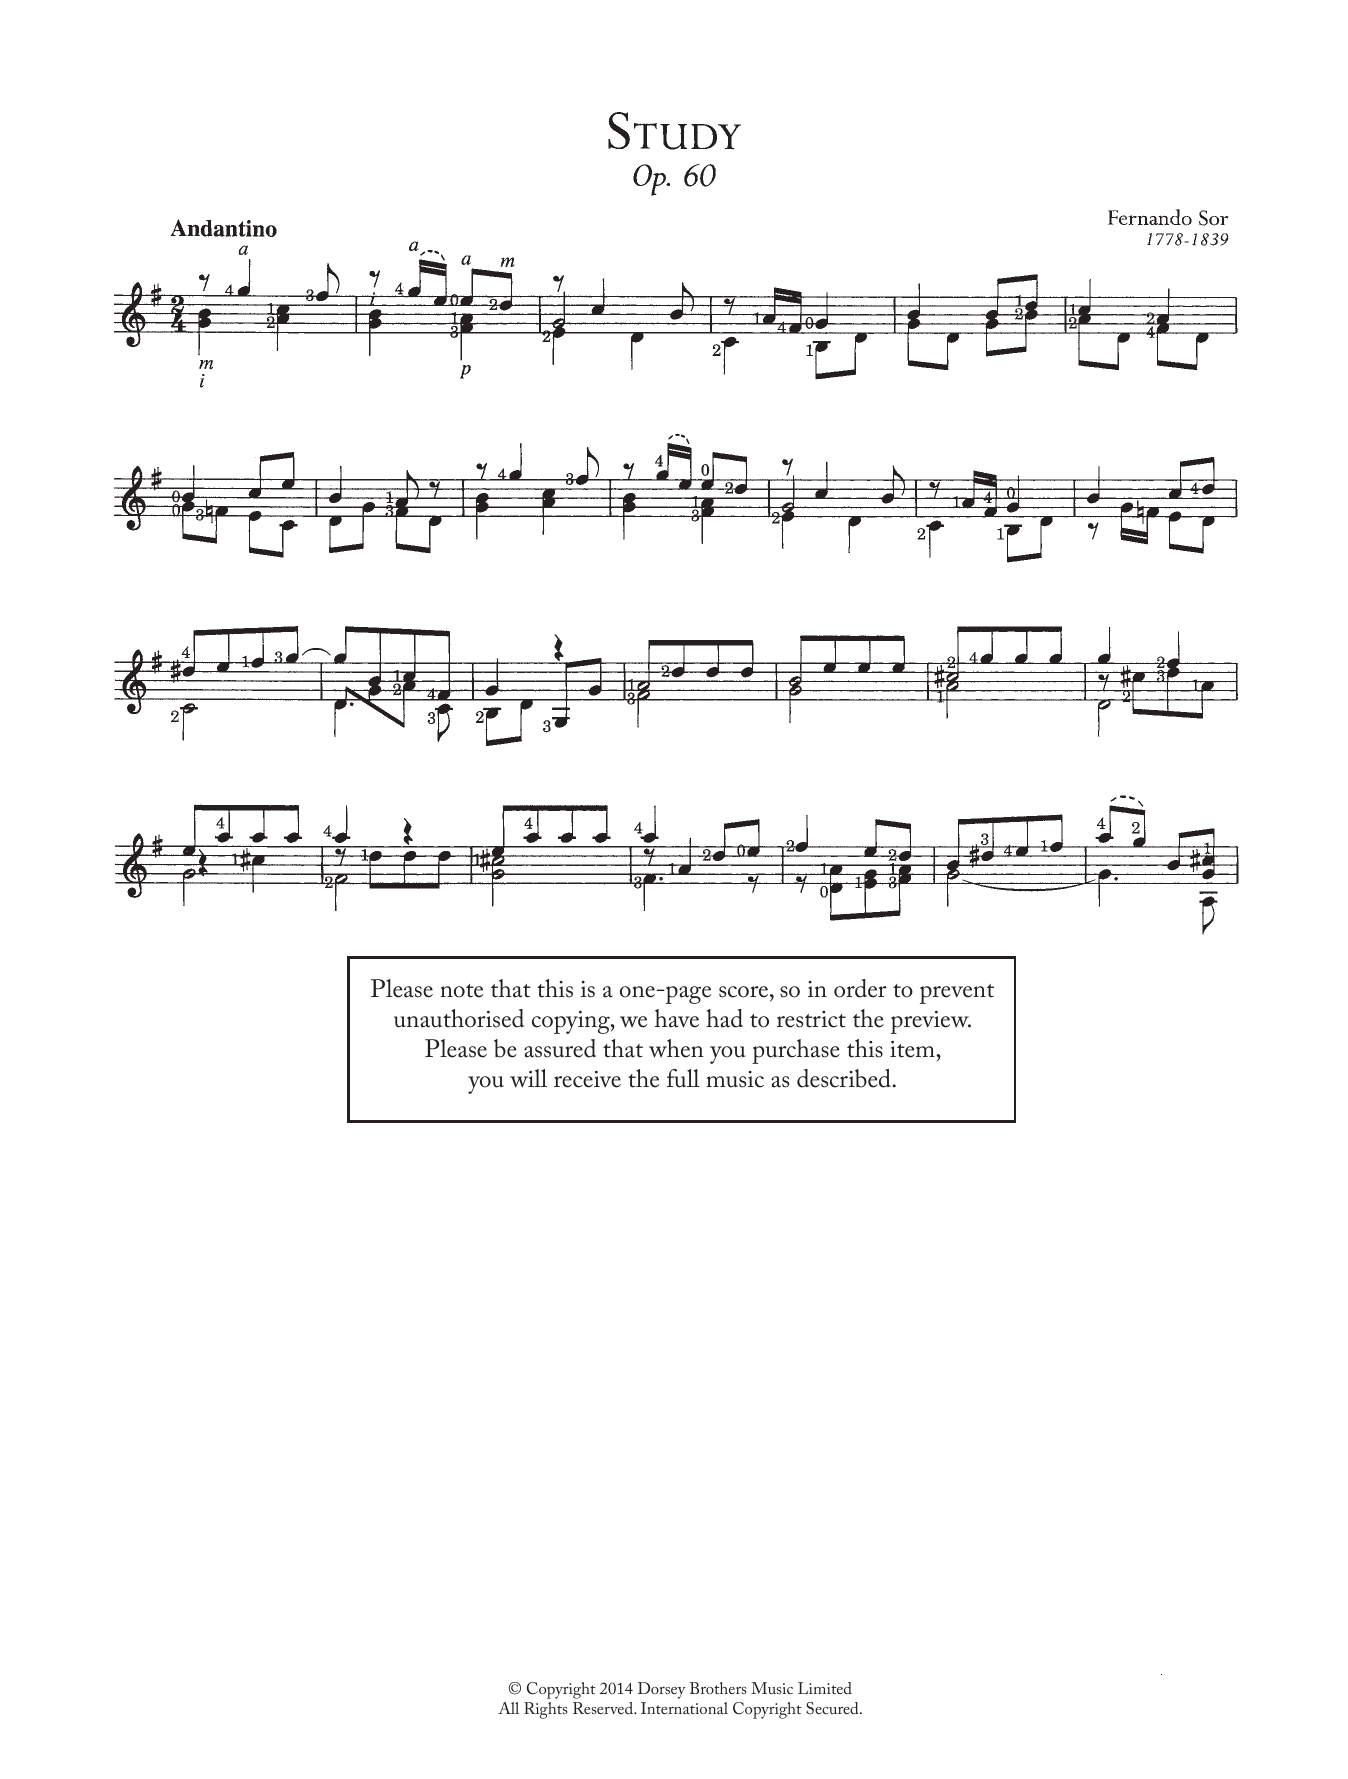 Study, Op.60, No.16 sheet music